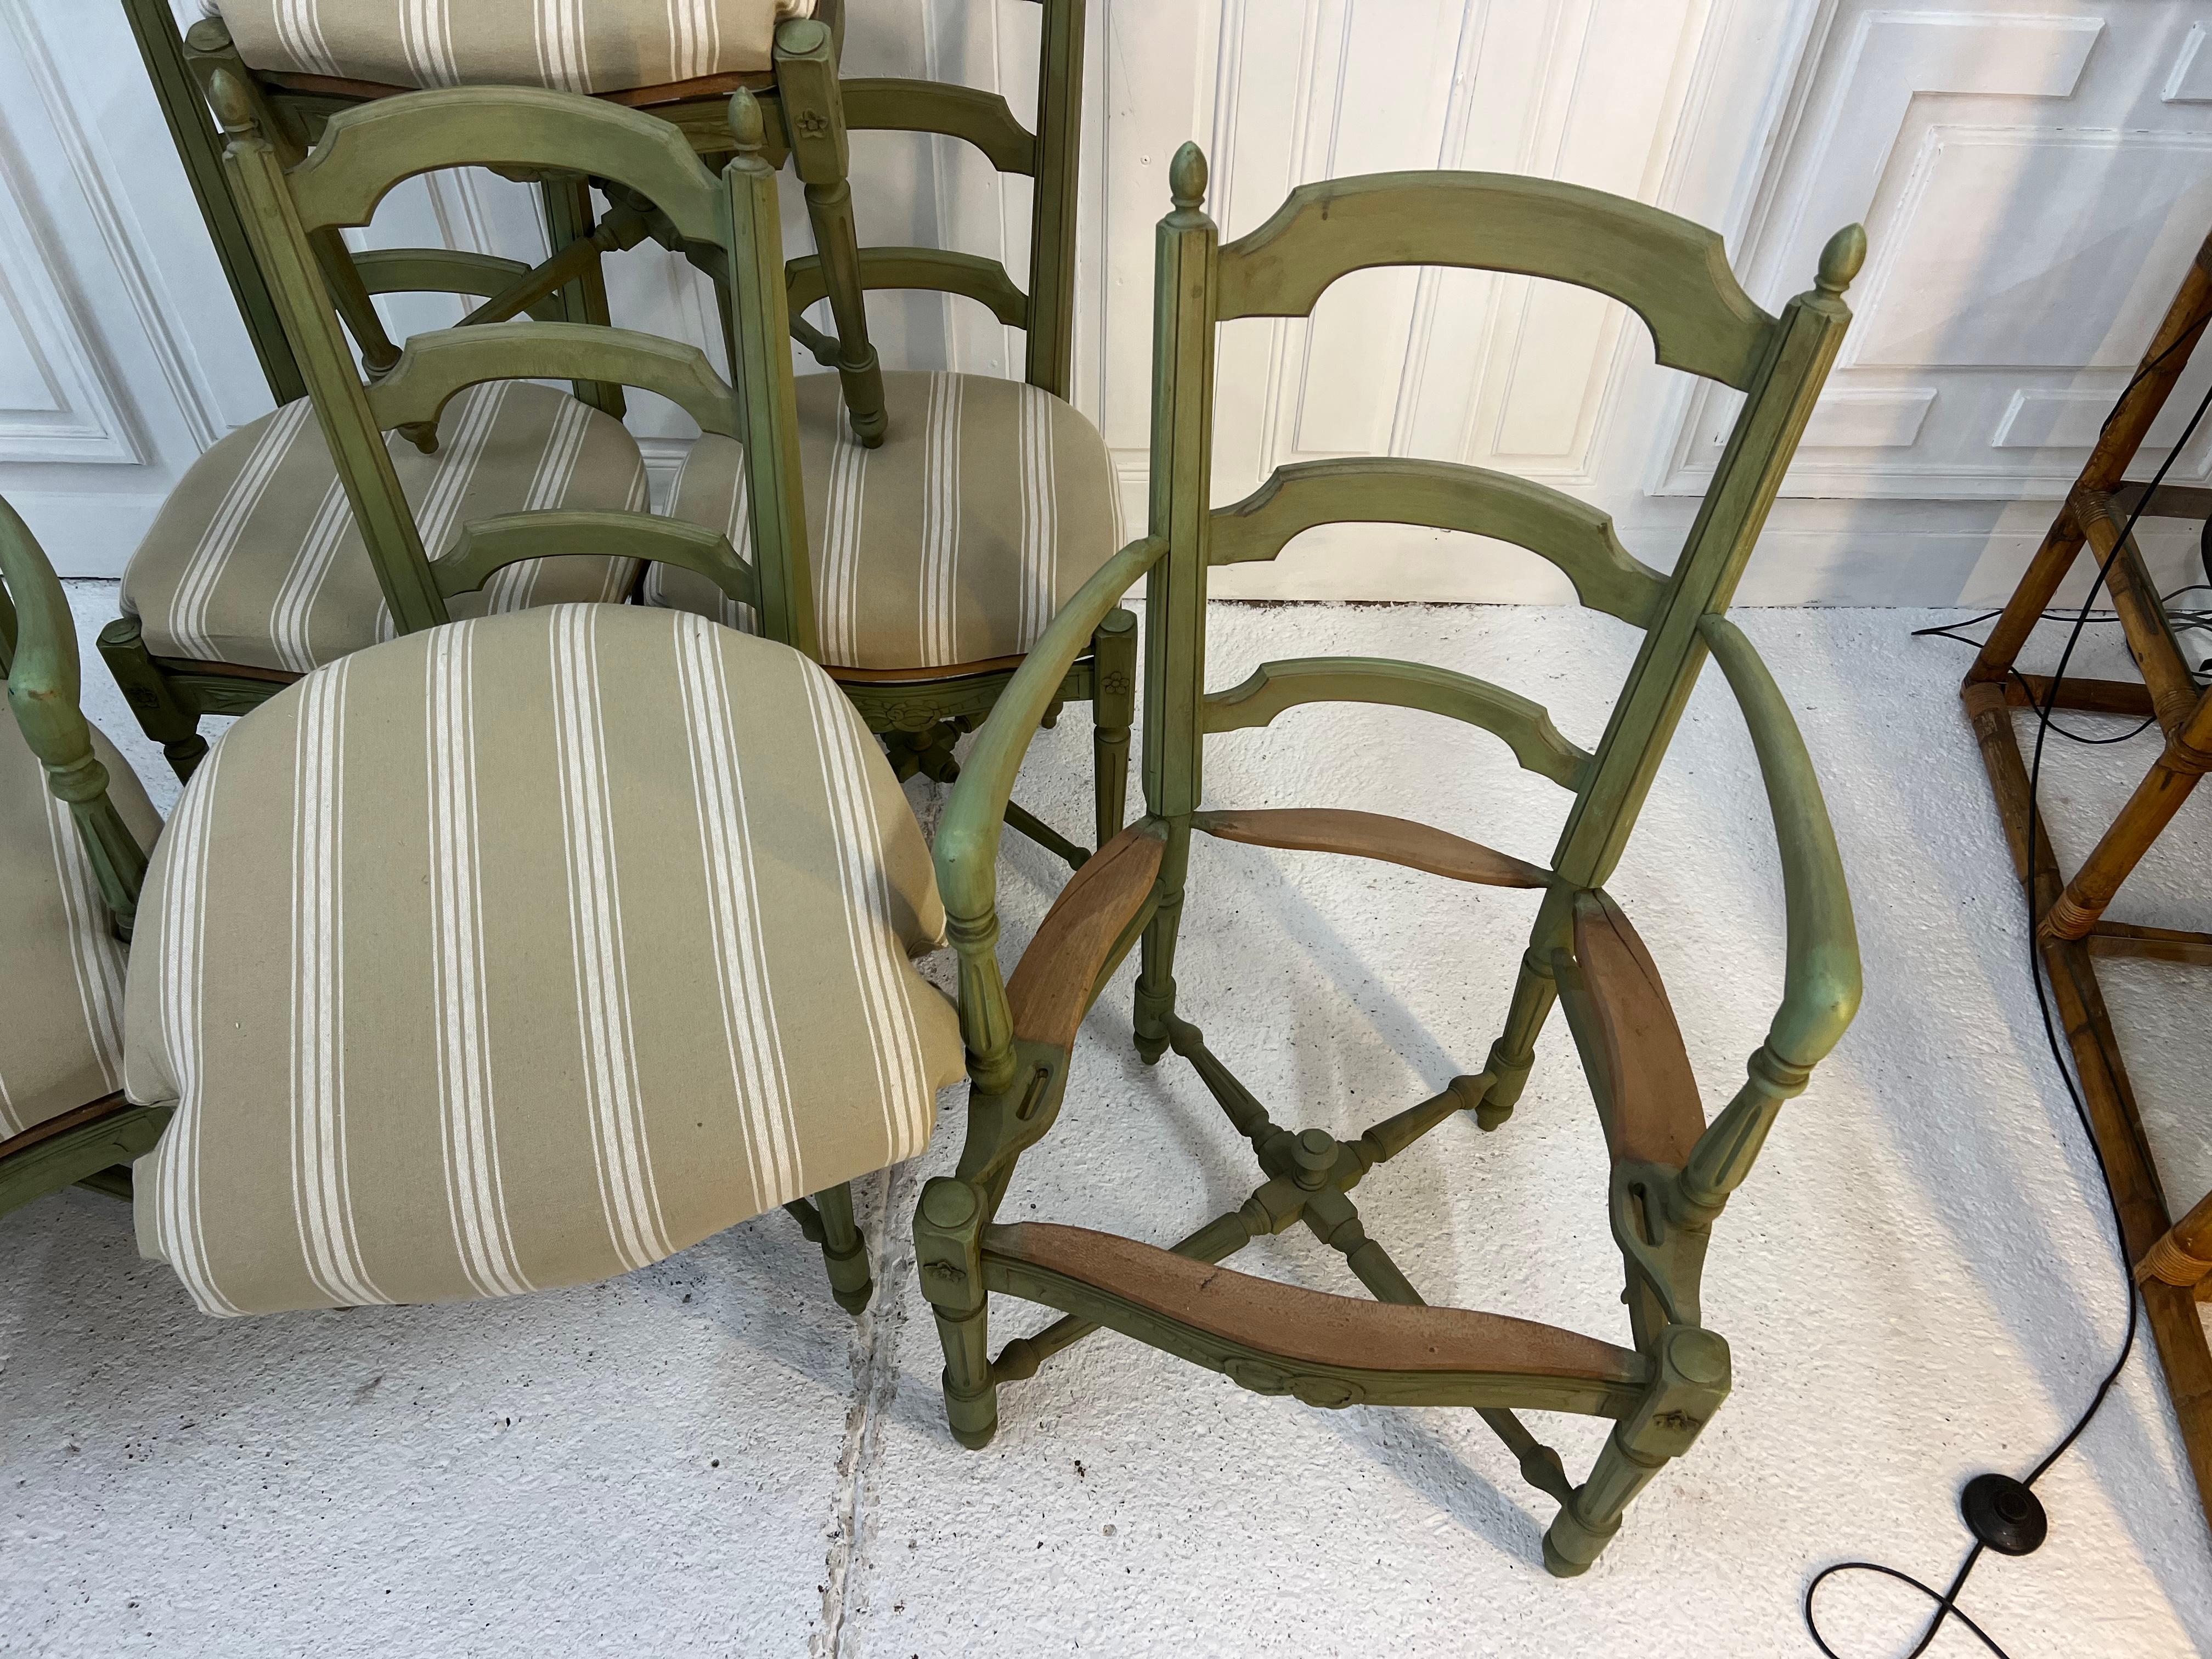 4 Stühle und 2 Sessel im Louis XVI-Stil mit grüner Patina
die Sitze wurden mit einem Matratzenstoff neu gepolstert
die Giebel sind fein geschnitzt mit Louis XVI Girlanden, die Basis ist in X-förmigen Tops
die Sitze lassen sich leicht an Ihren